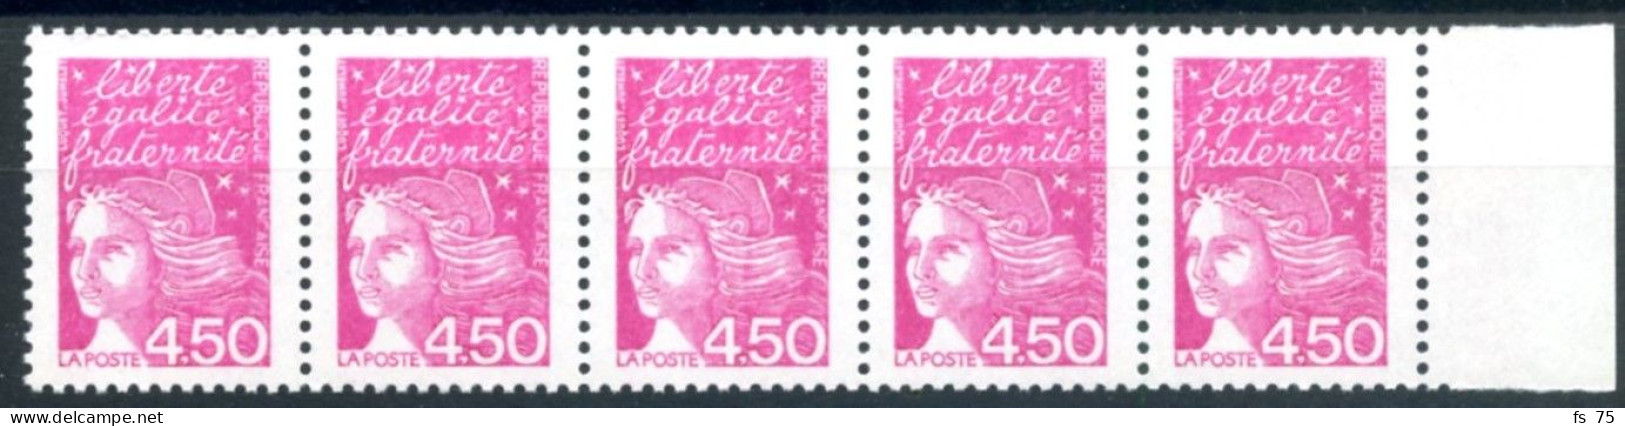 FRANCE - N°3096a 4F50 ROSE MARIANNE DE LUQUET BANDE DE 5 SANS PHOSPHORE SANS CHARNIERE ** - Unused Stamps